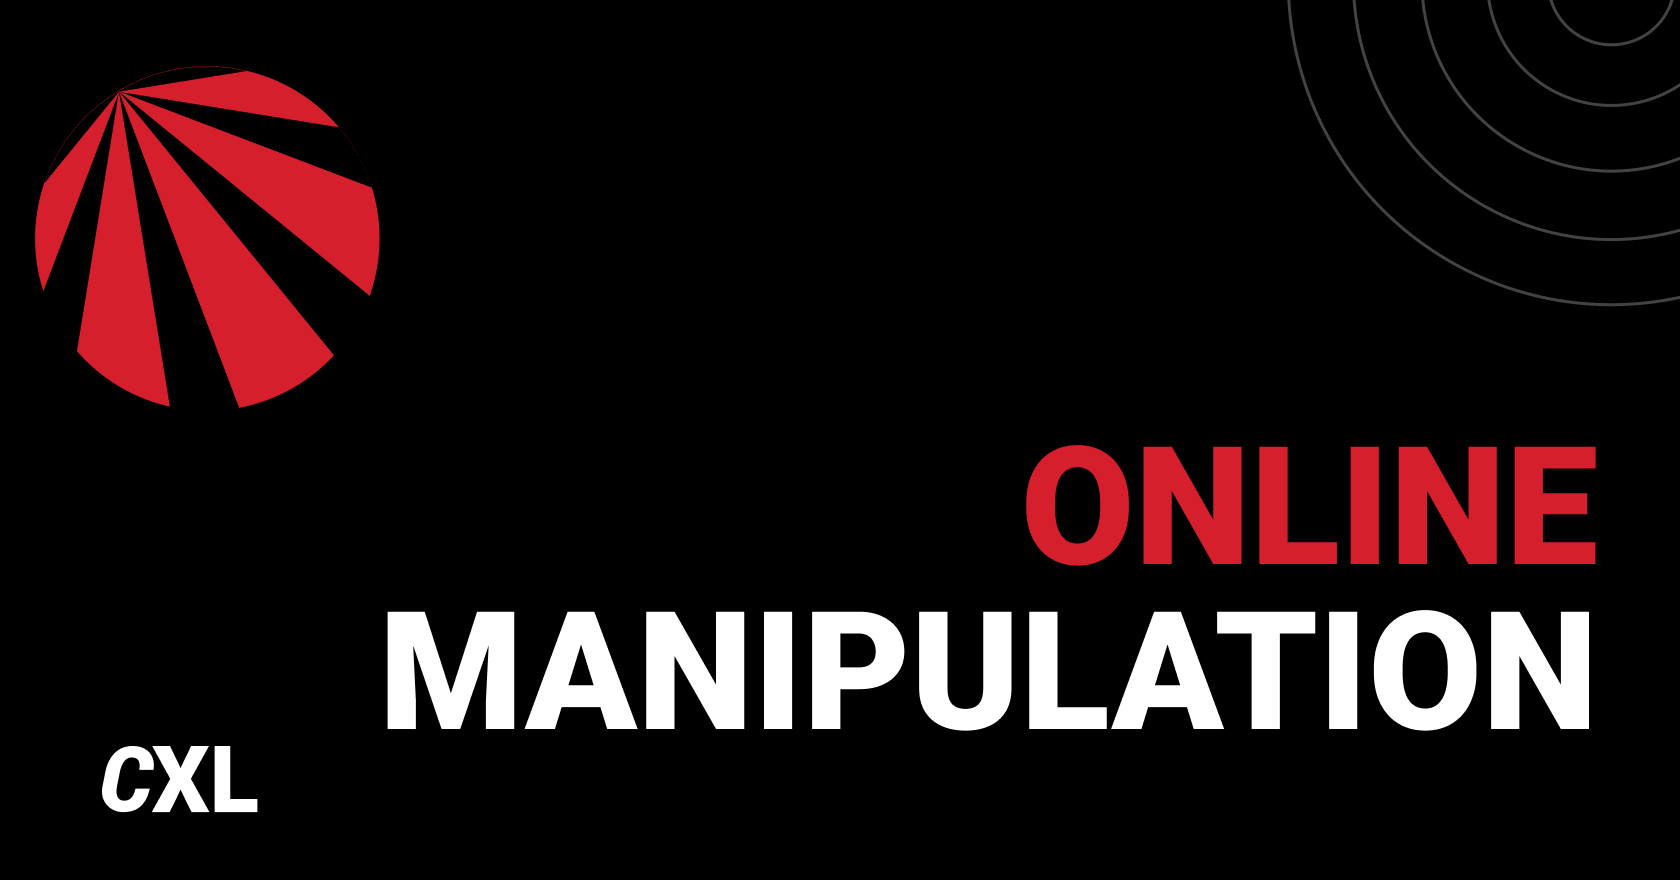 Manipulation Isn't Communication